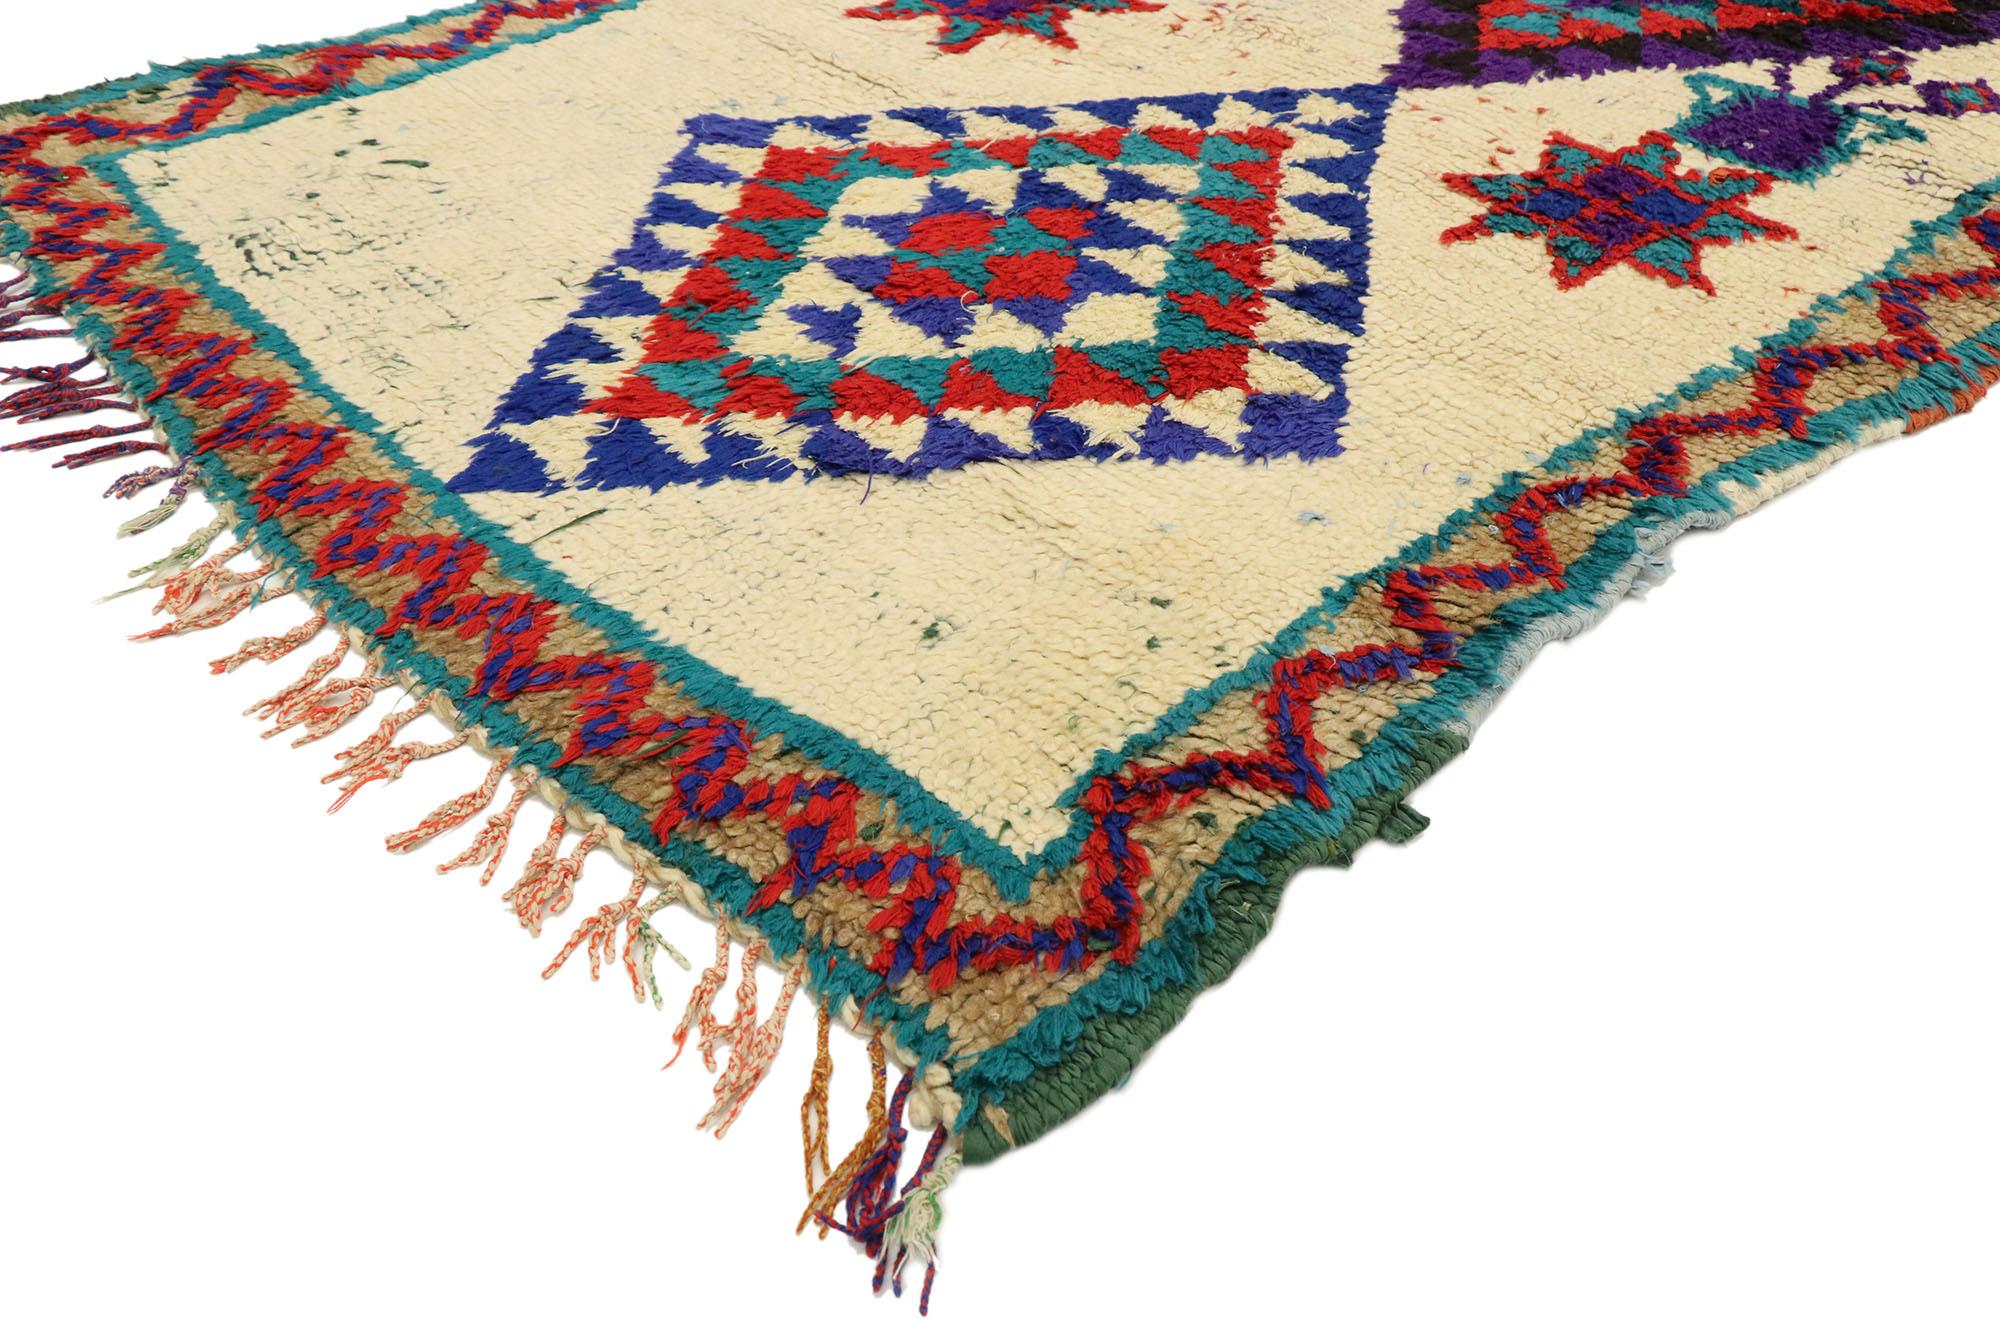 20627 Vintage Berber marokkanischen Boucherouite Azilal Teppich mit Tribal Stil, Shag Flur Läufer. Dieser handgeknüpfte marokkanische Berberteppich aus Wolle und Baumwolle zeichnet sich durch drei Rauten in der Mitte aus, die von achtzackigen